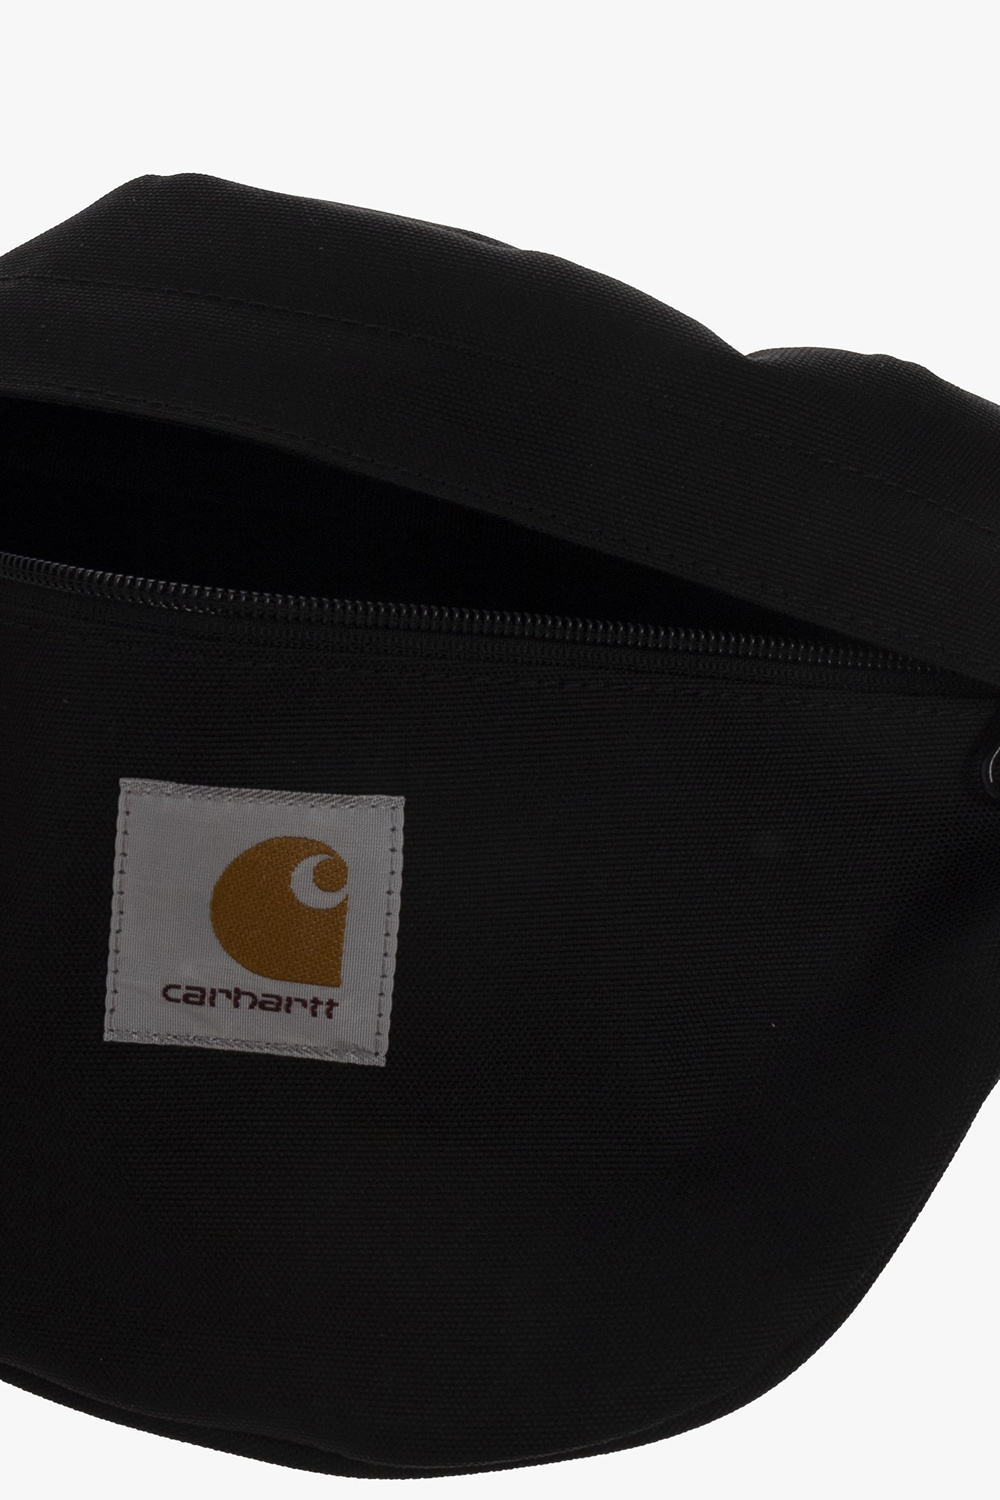 Carhartt WIP Canvas Hip Bag Dust H